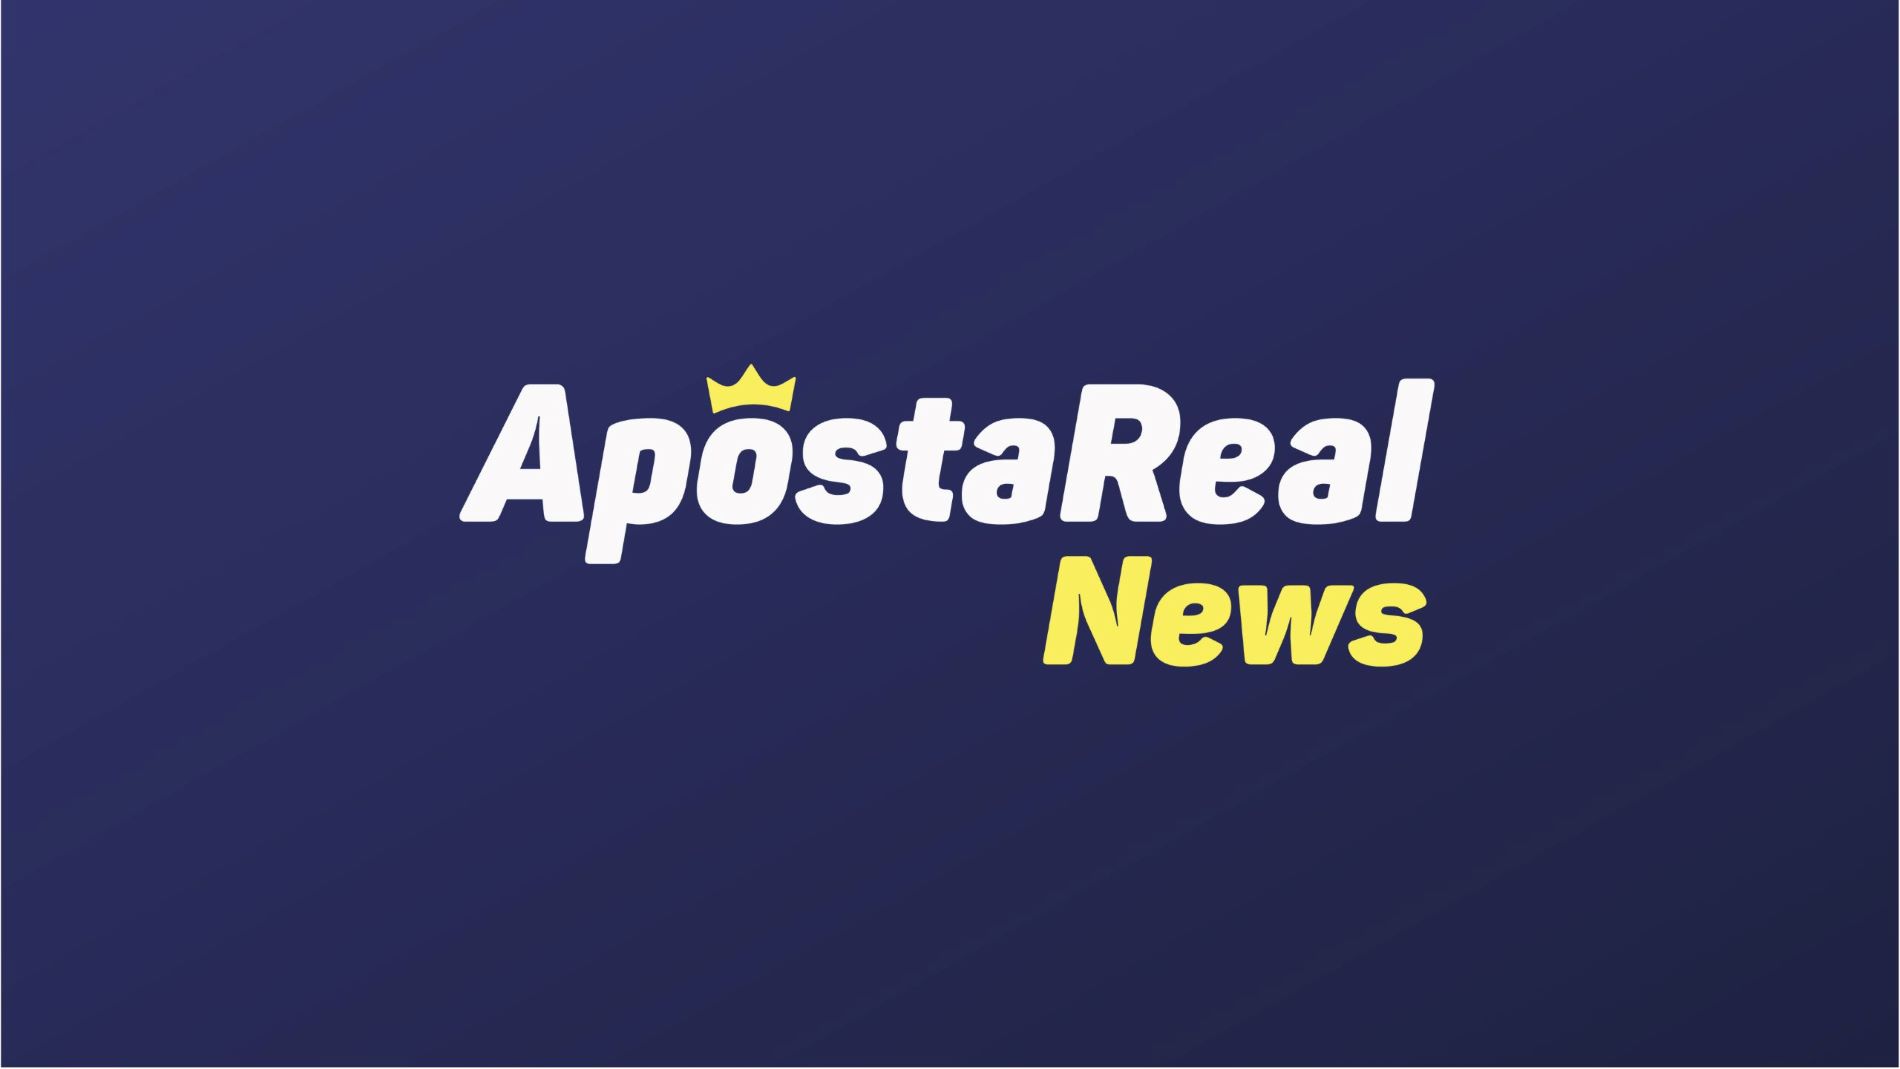 ApostaReal News